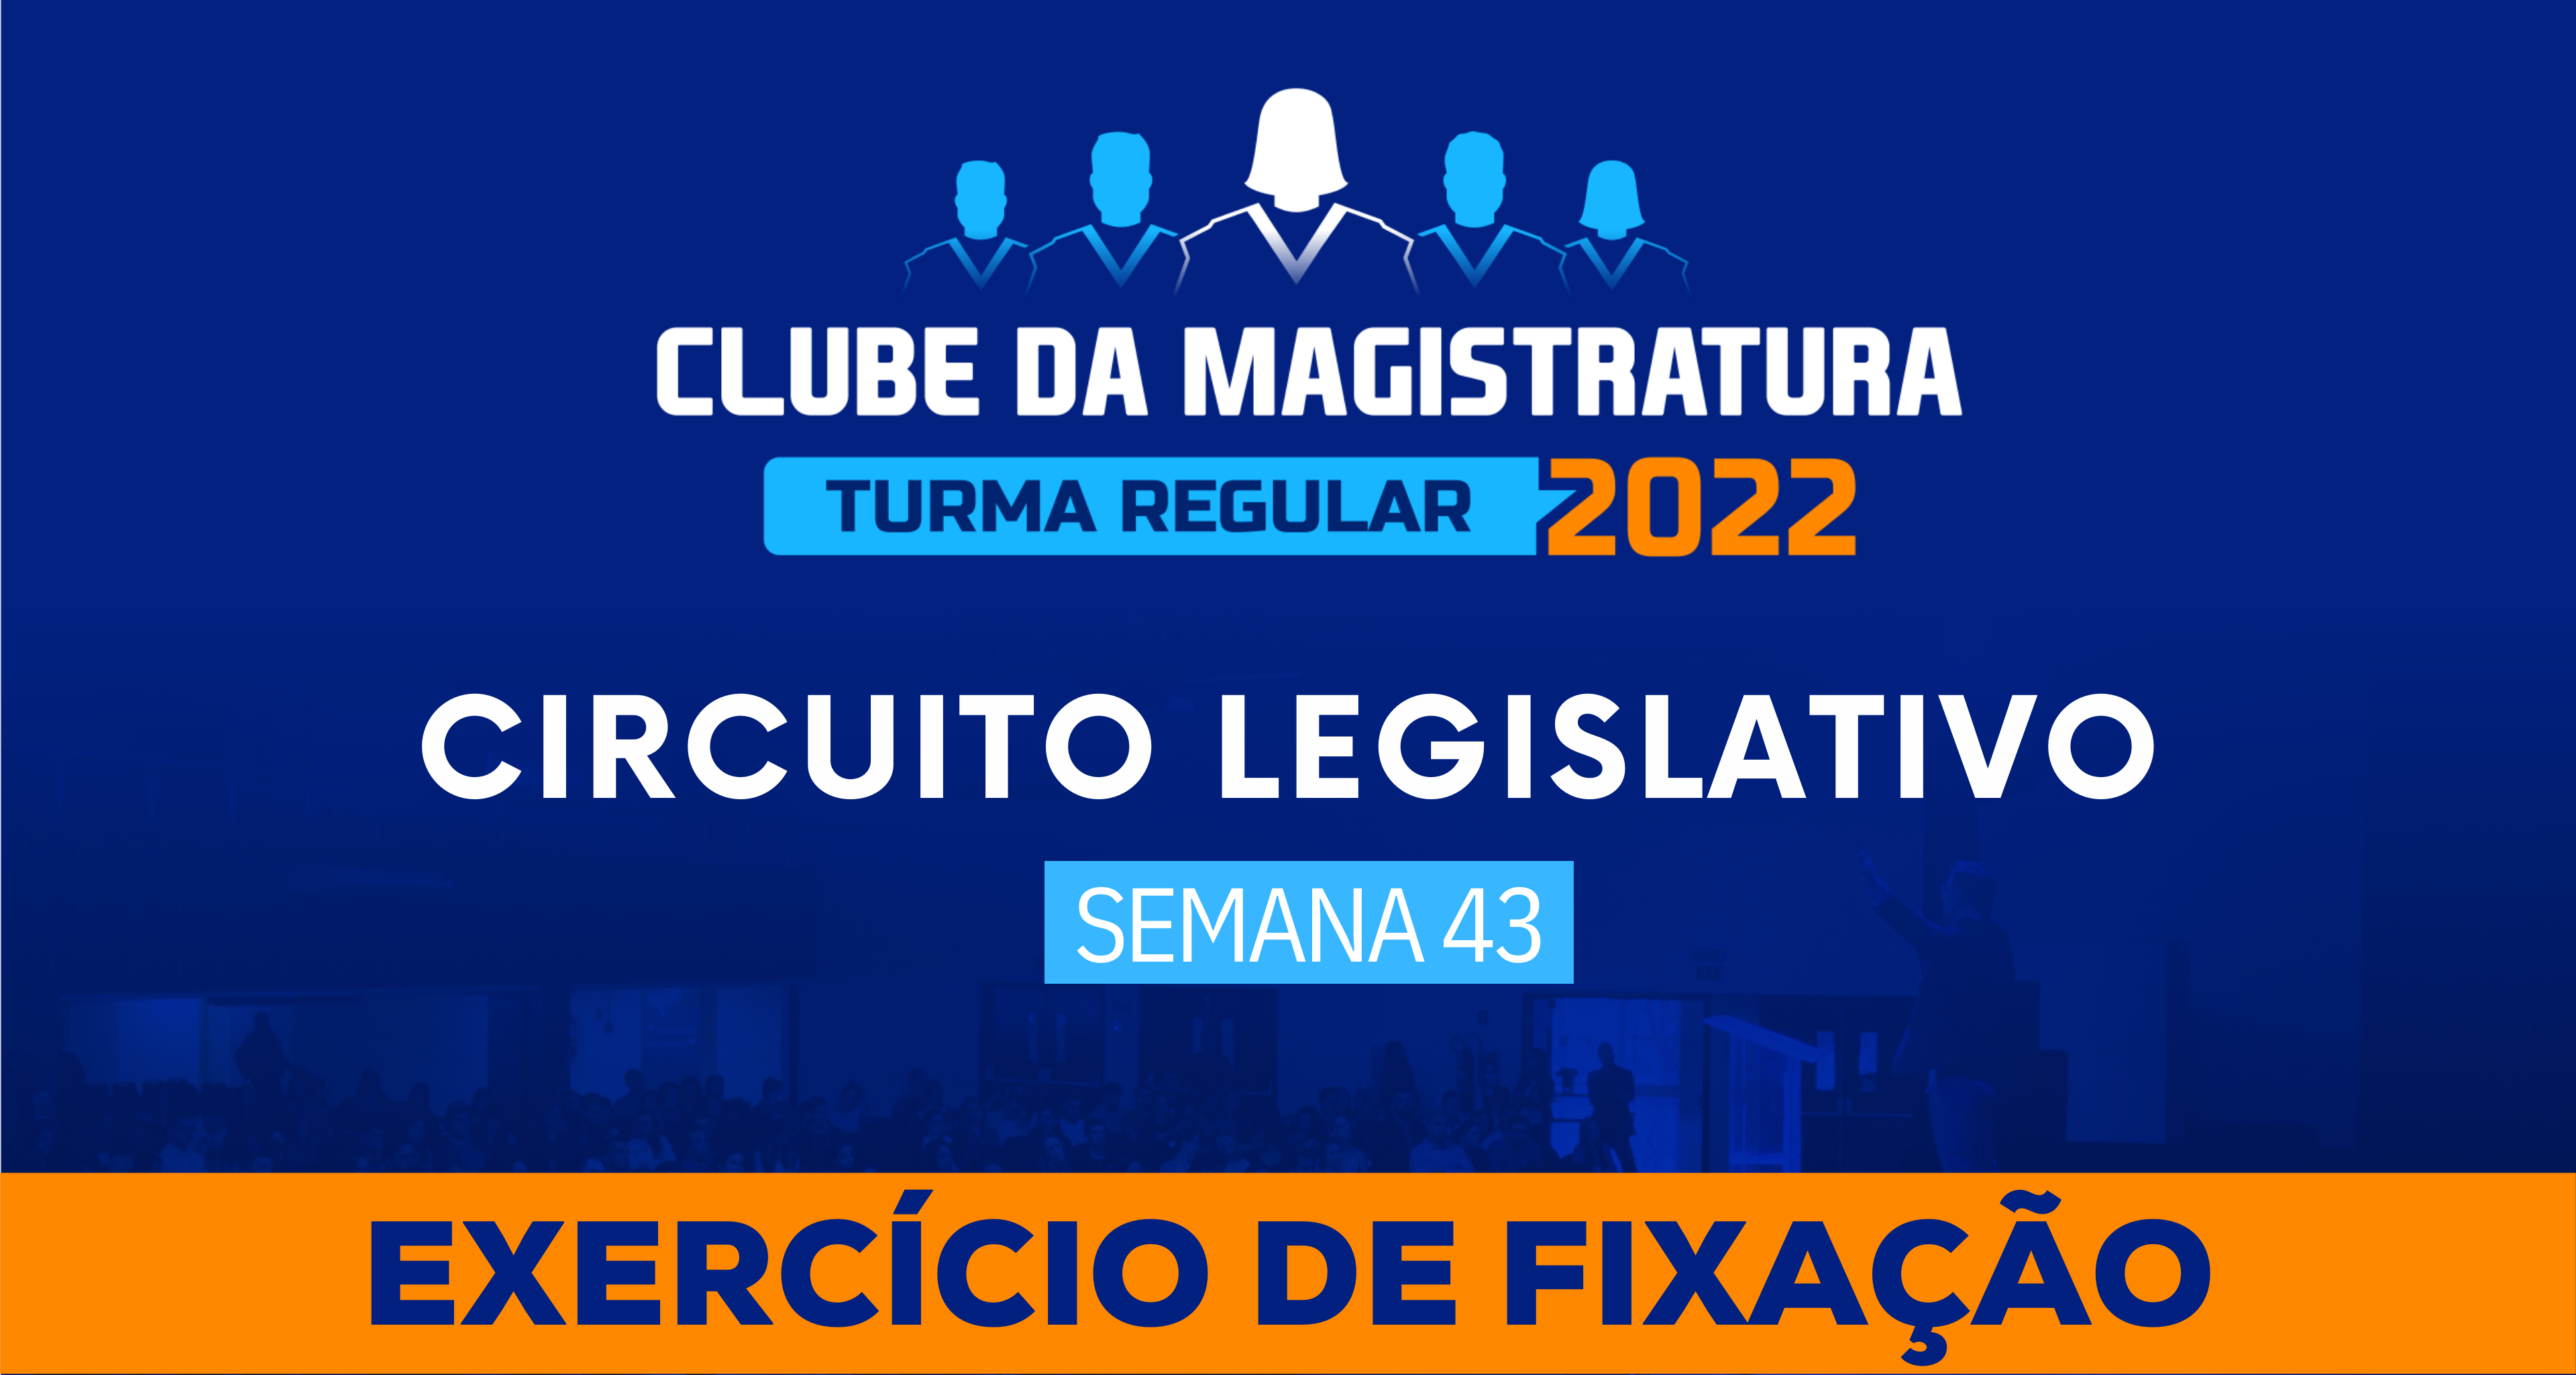 Circuito Legislativo 2022.1 (Clube da Magistratura - Semana 43)